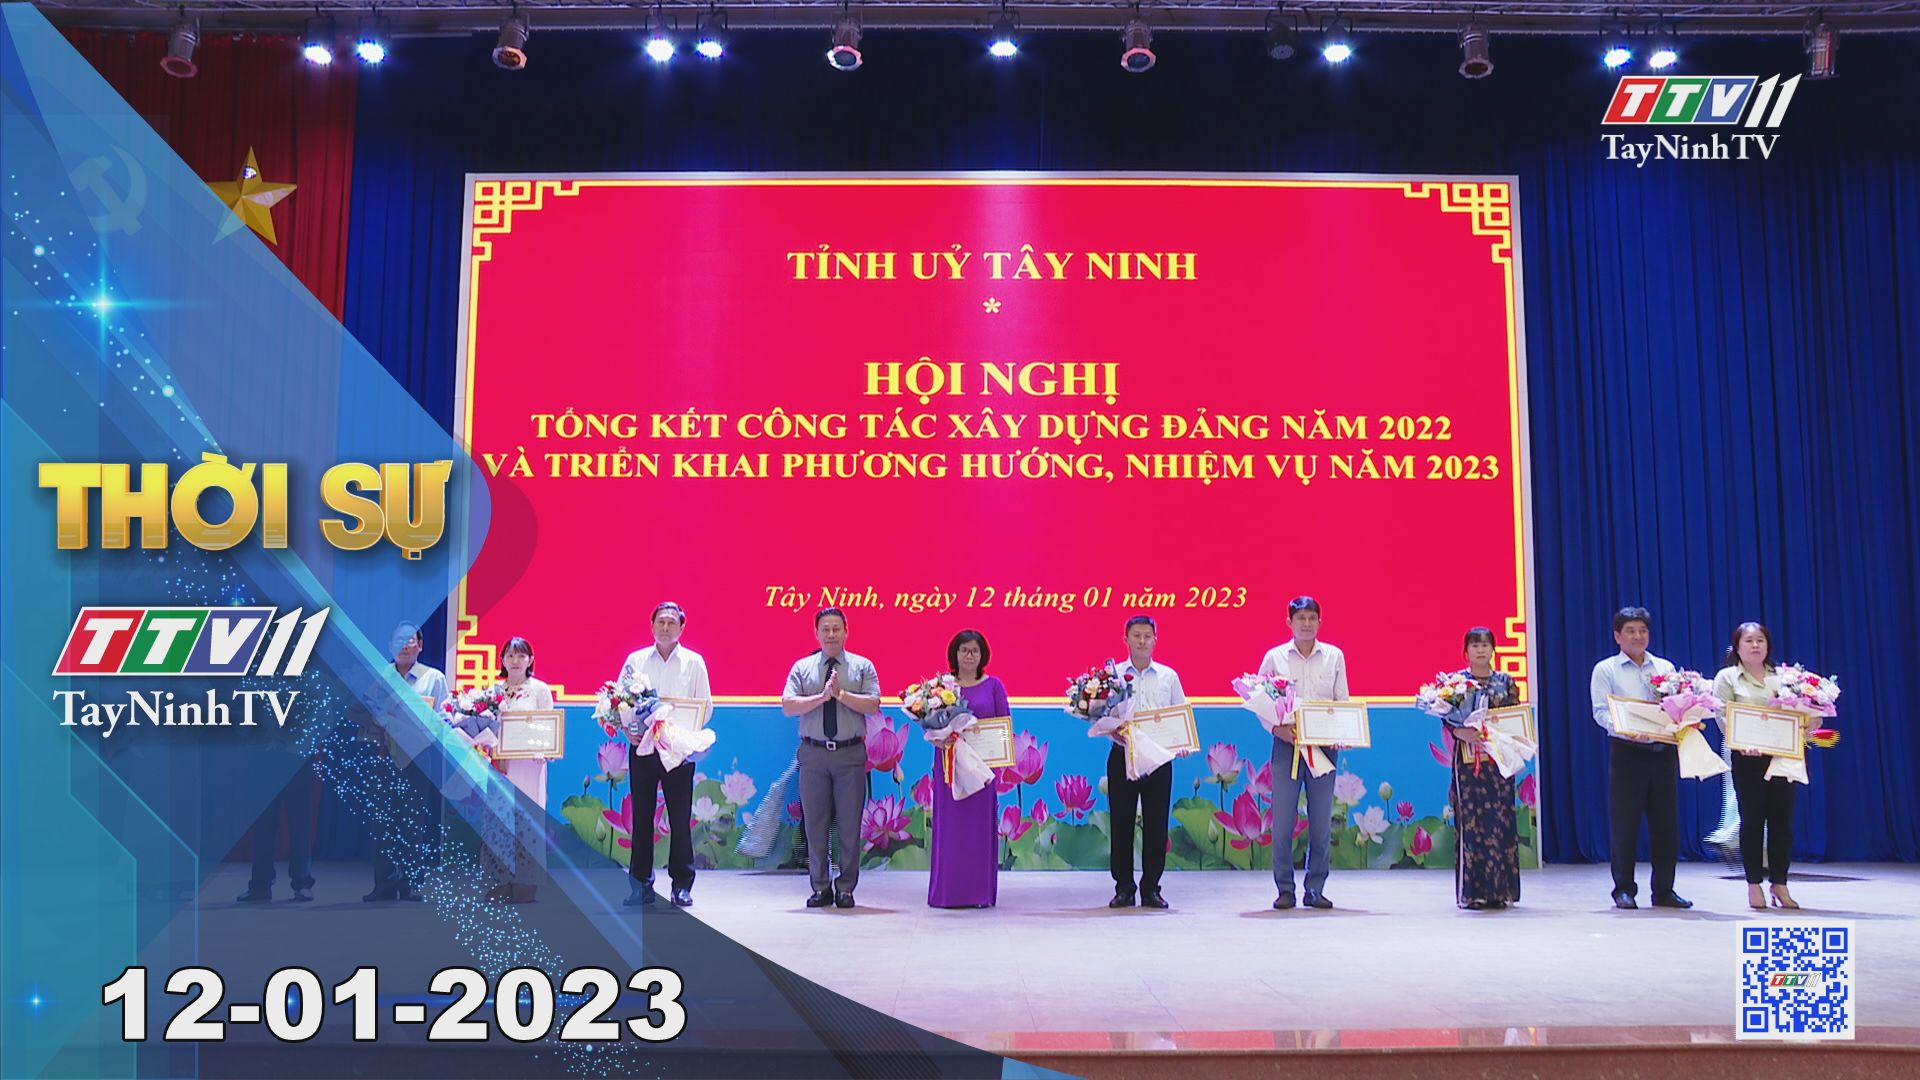 Thời sự Tây Ninh 12-01-2023 | Tin tức hôm nay | TayNinhTV